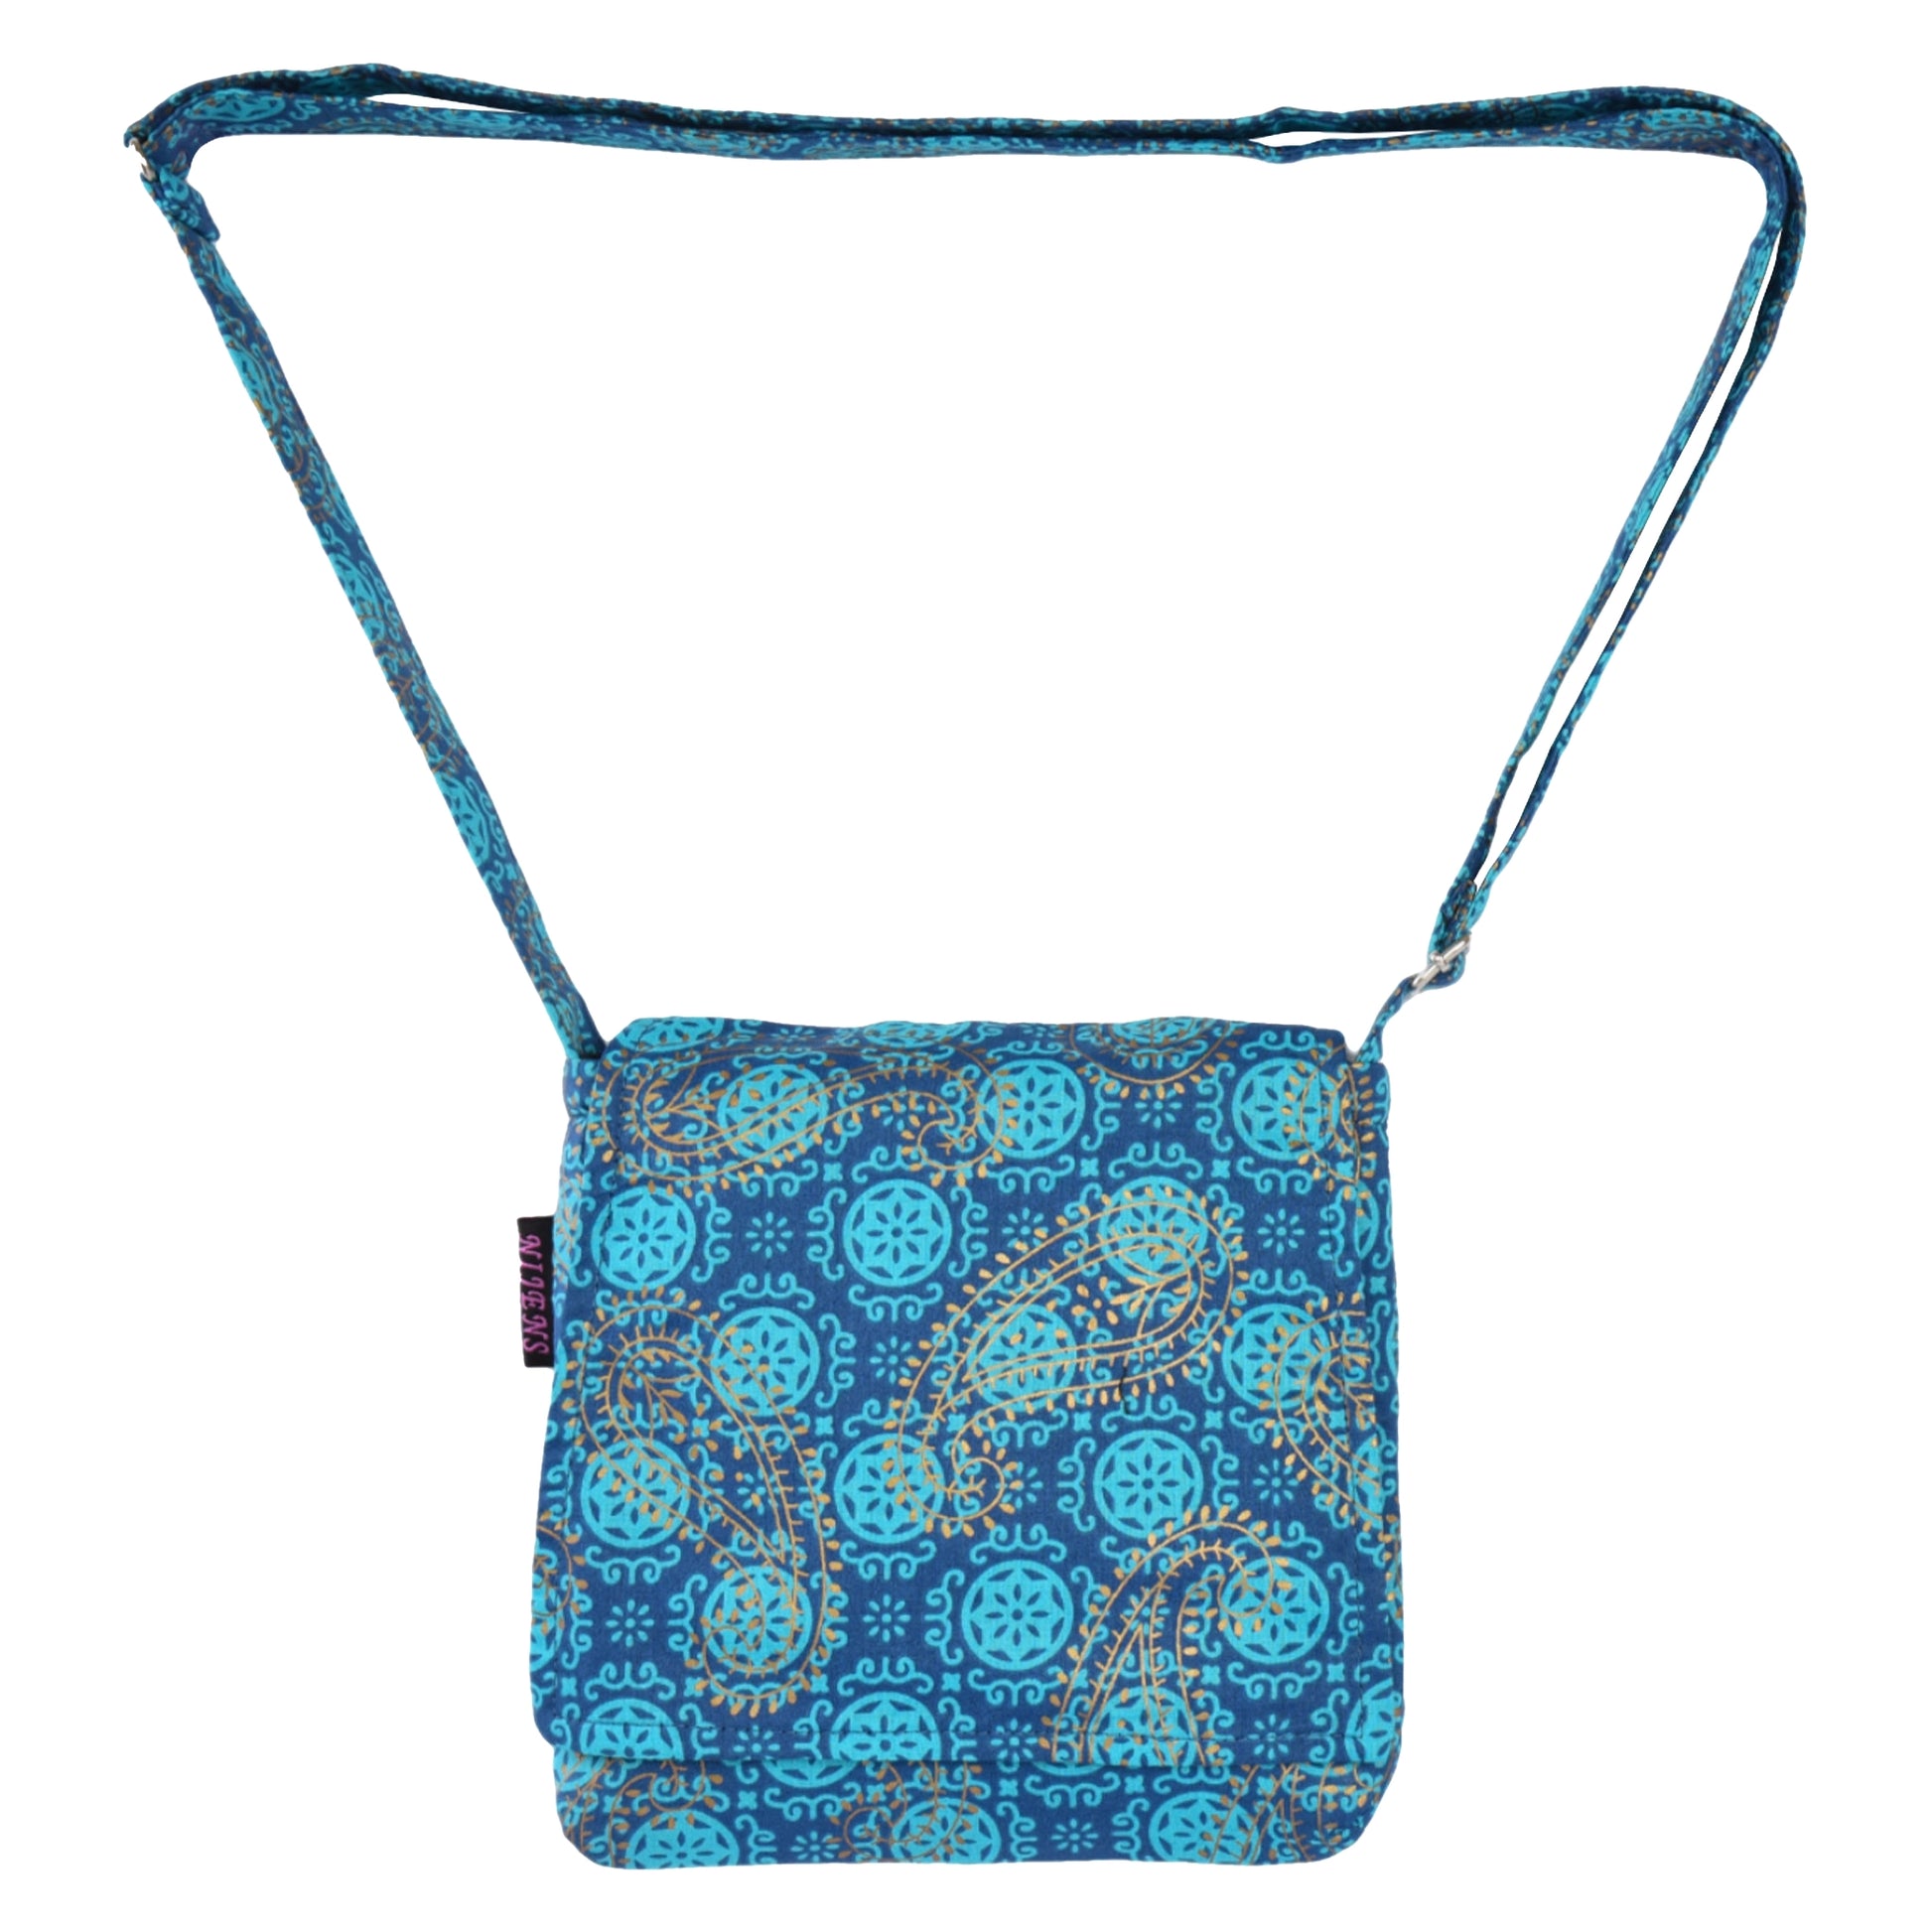 Kleine Tasche, Umhängetasche aus Baumwolle, Türkis, dunkelblau mit Muster und goldenen Paisley-Elementen. Tragegurt ist stufenlos verstellbar.